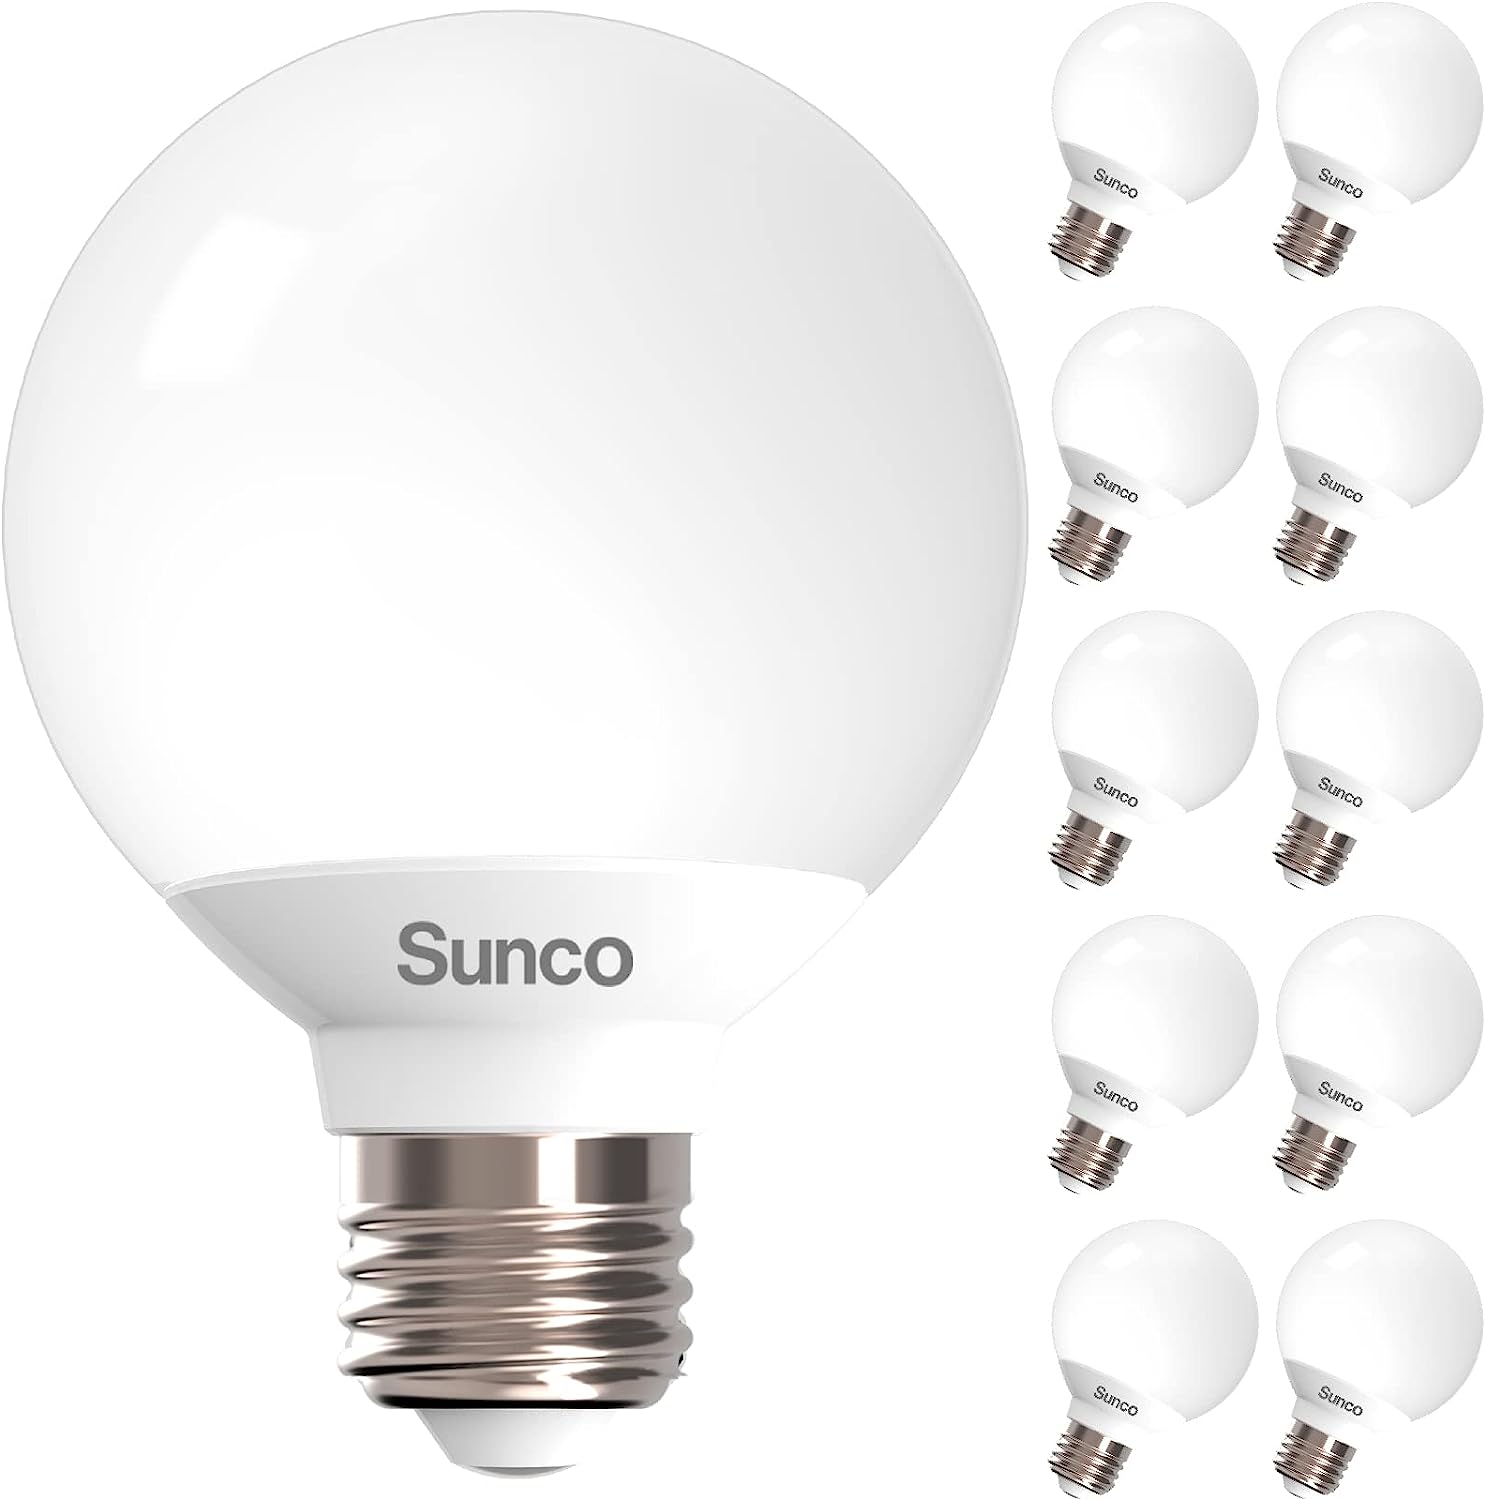 Sunco 10 Pack Vanity Globe Light Bulbs G25 LED for [...]